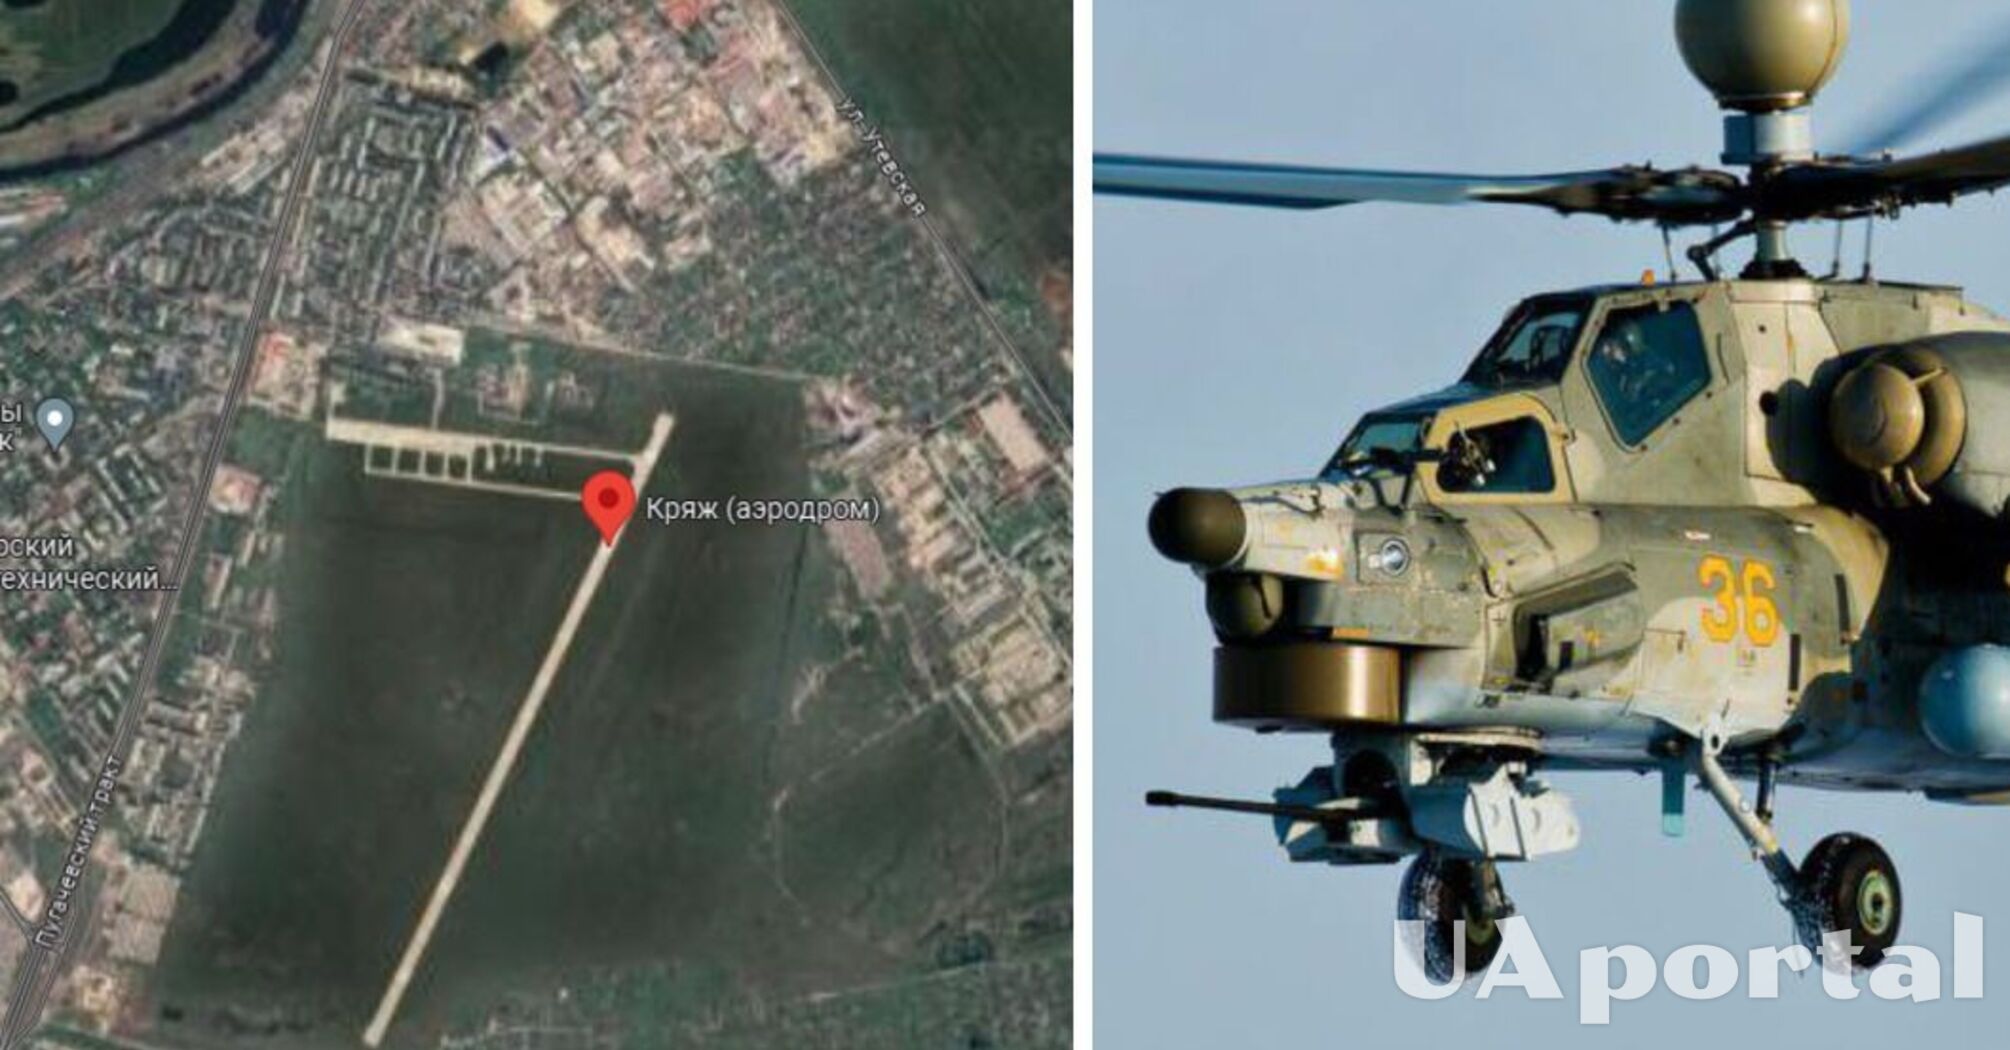 Сили ГУР знищили три гелікоптери на території росії (фото, відео)